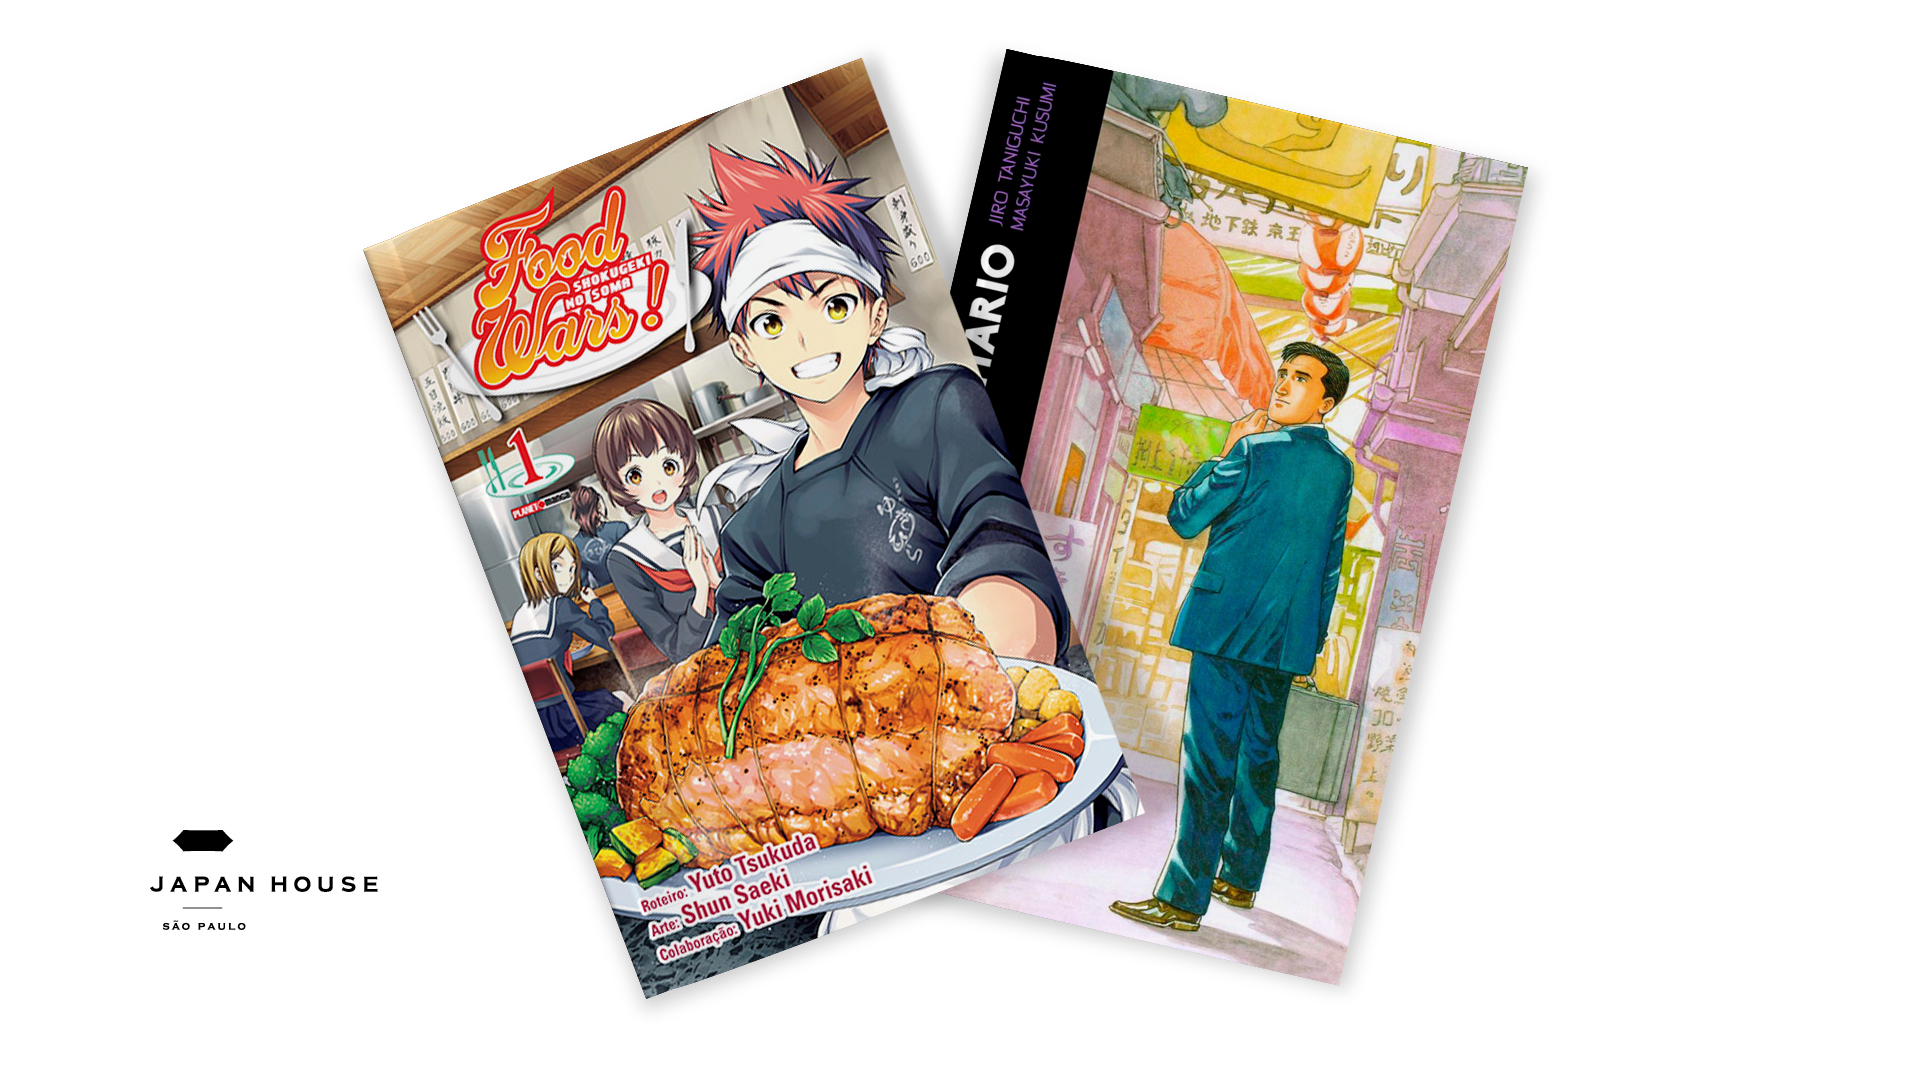 Imagem da capa de dois mangás em fundo branco: Food Wars!, de Yuuto Tsukuda, Yuki Morisaki e Shun Saeki, e O Gourmet Solitário, de Masayuki Kusumi e Jiro Taniguchi.